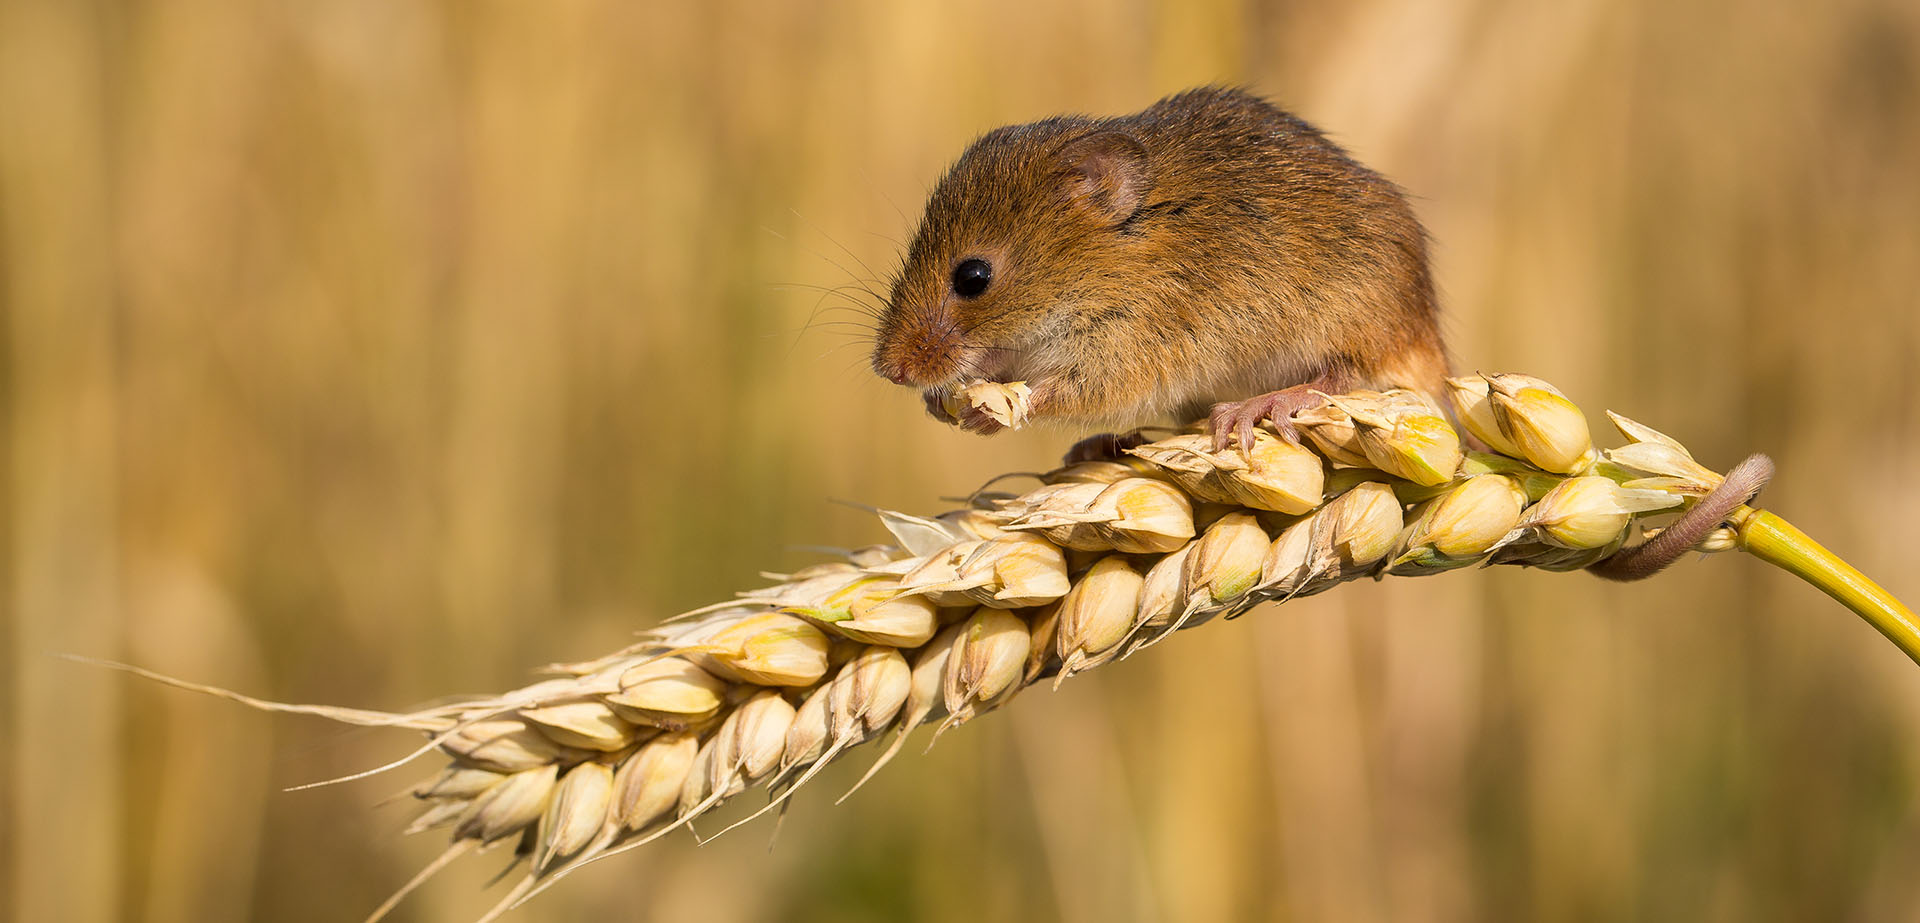 Harvest Mice Australian mice plague grain season